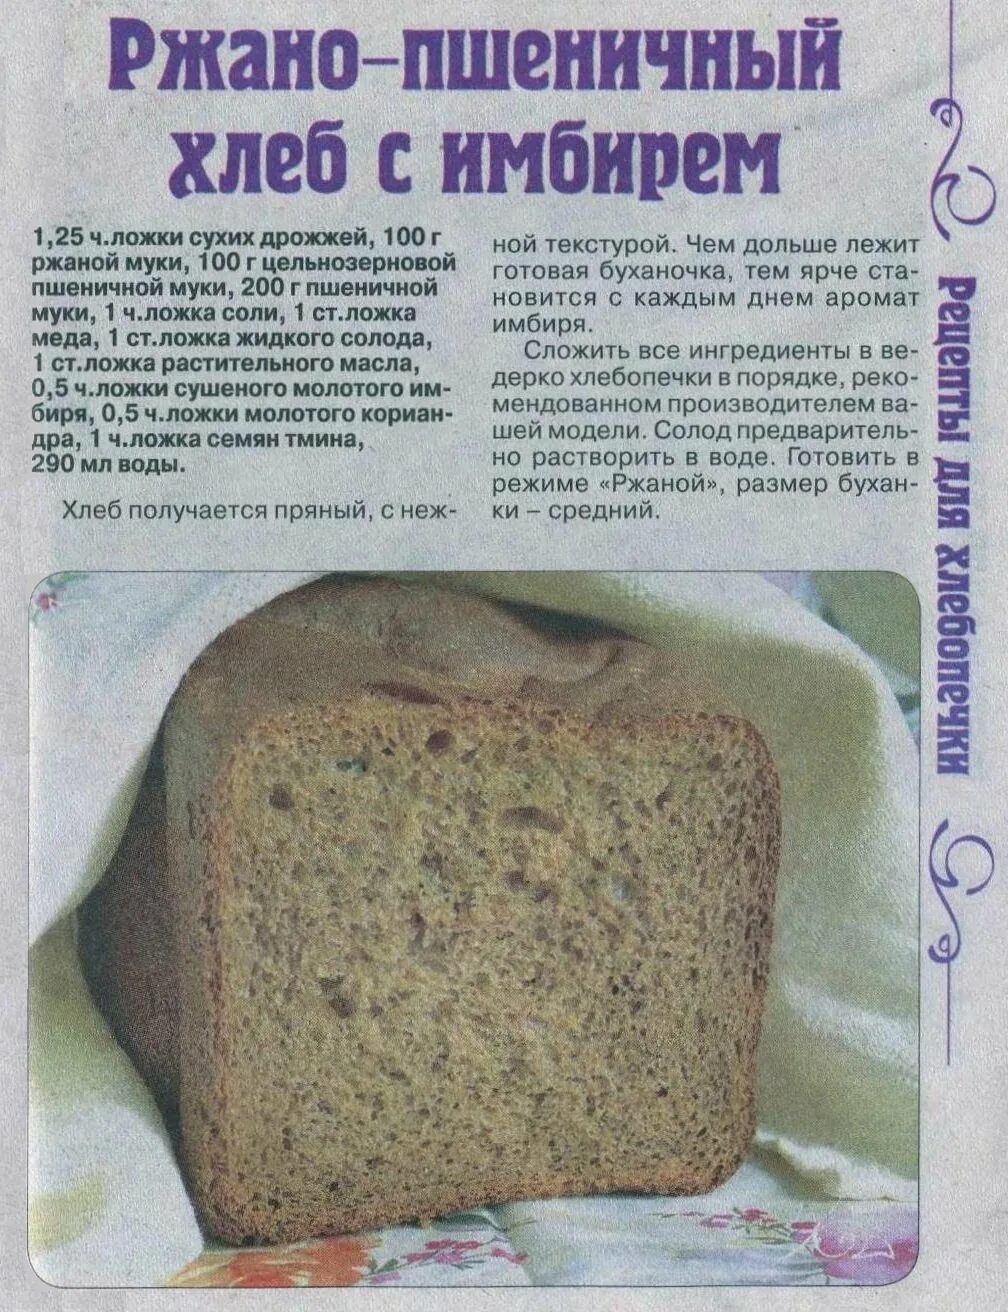 Рецепт хлеба в сорта. Рецепт хлеба в хлебопечке. Тесто на хлеб в хлебопечке. Домашний хлеб в хлебопечке. Рецептура ржаного хлеба.